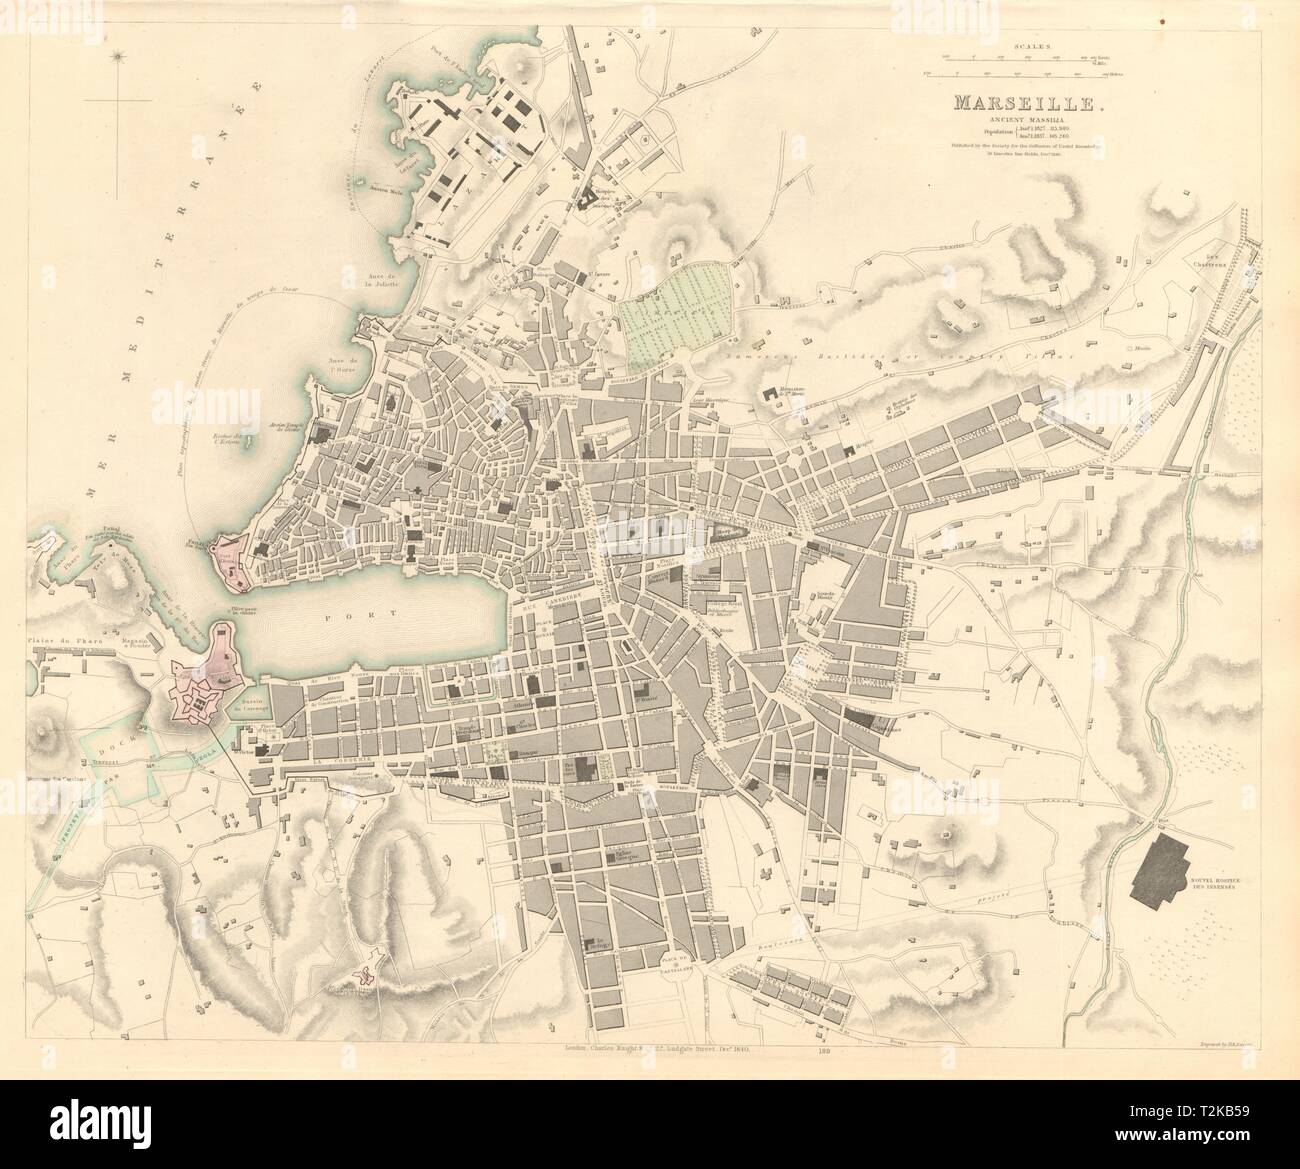 MARSEILLE. Antike Stadt Stadtplan. Alte Massilia. Marseille. SDUK 1847 Stockfoto